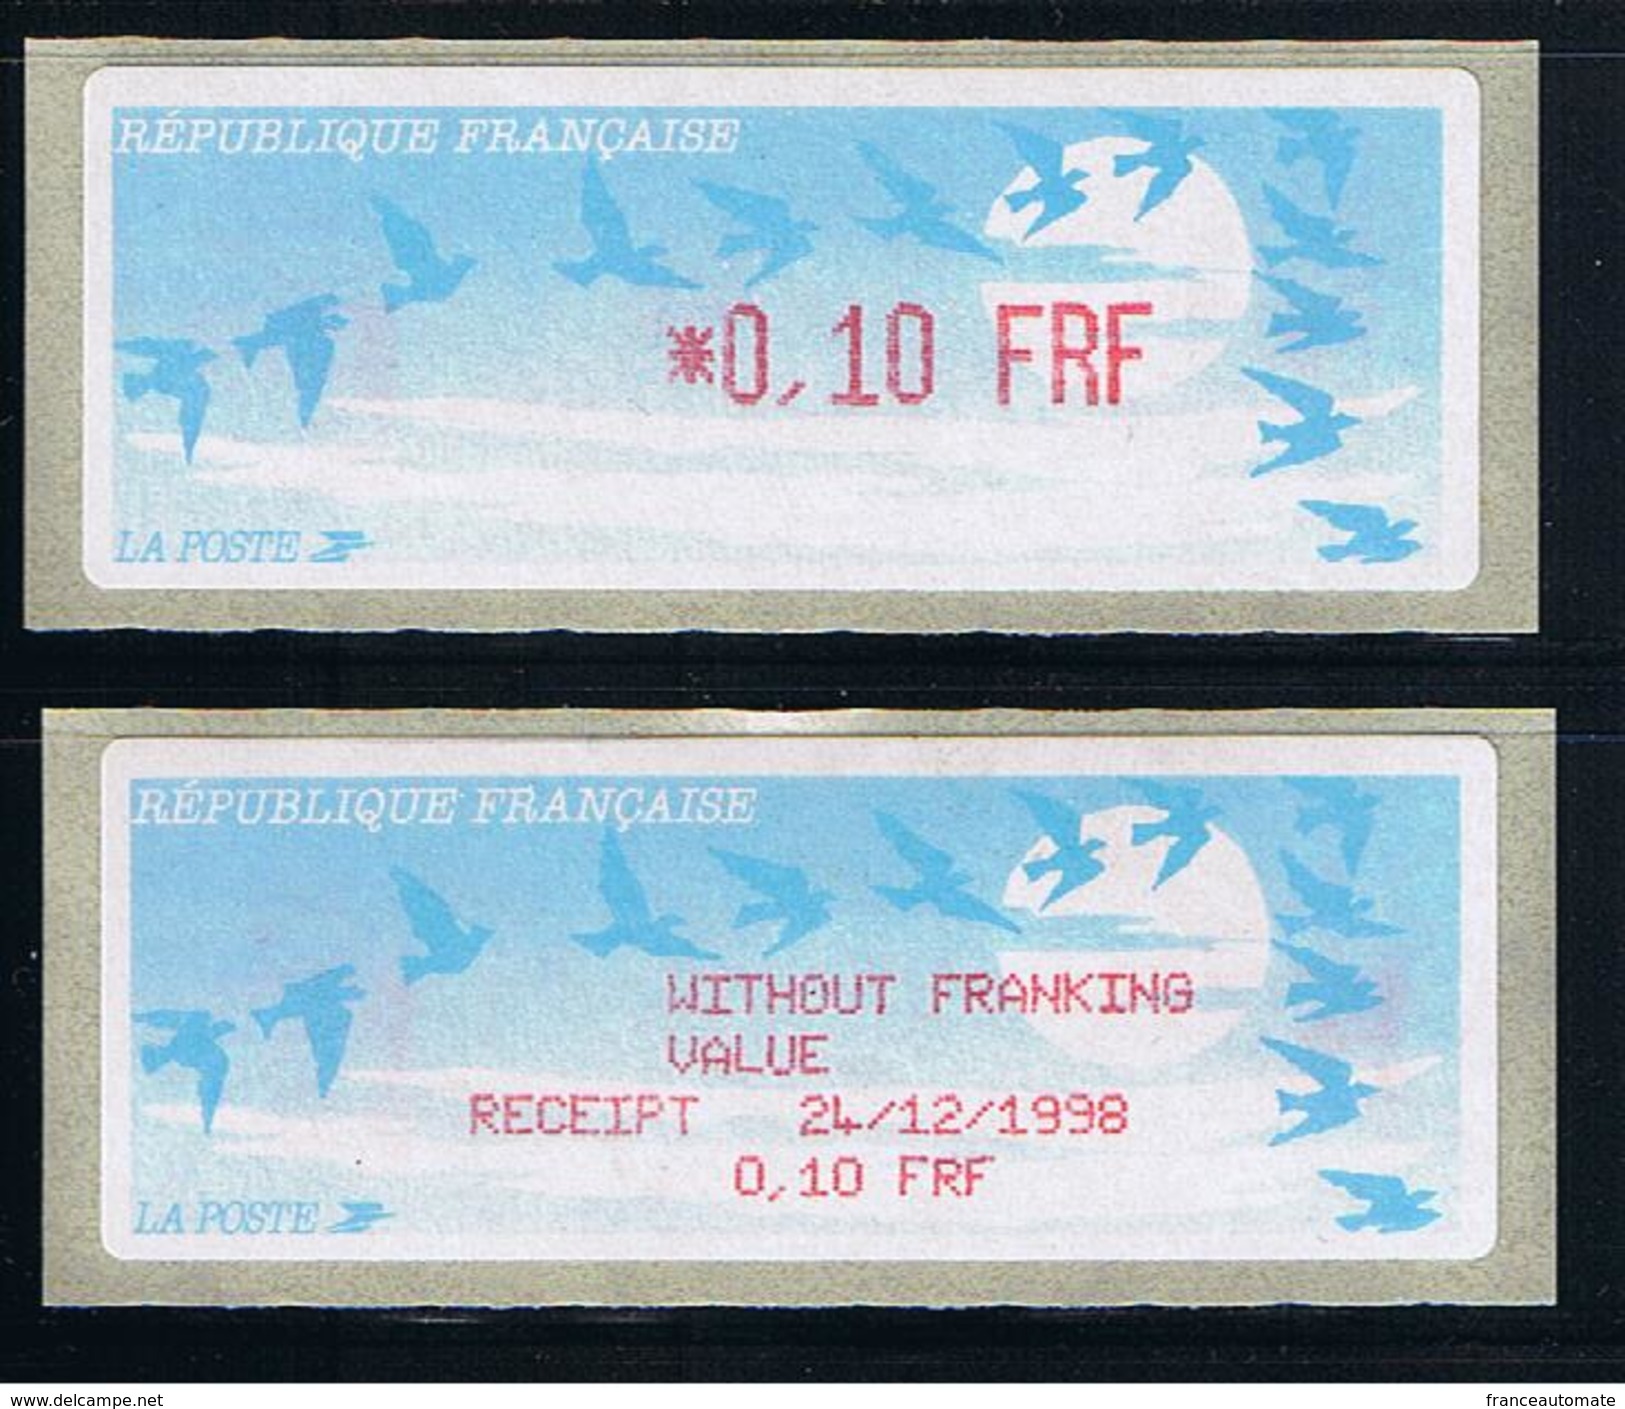 ATMS, LISA1, FRF, OISEAUX DE JUBERT, 0.10, Avec Reçu FRF En Anglais. Programme De La Préparation à L'Euro. - 1990 Type « Oiseaux De Jubert »